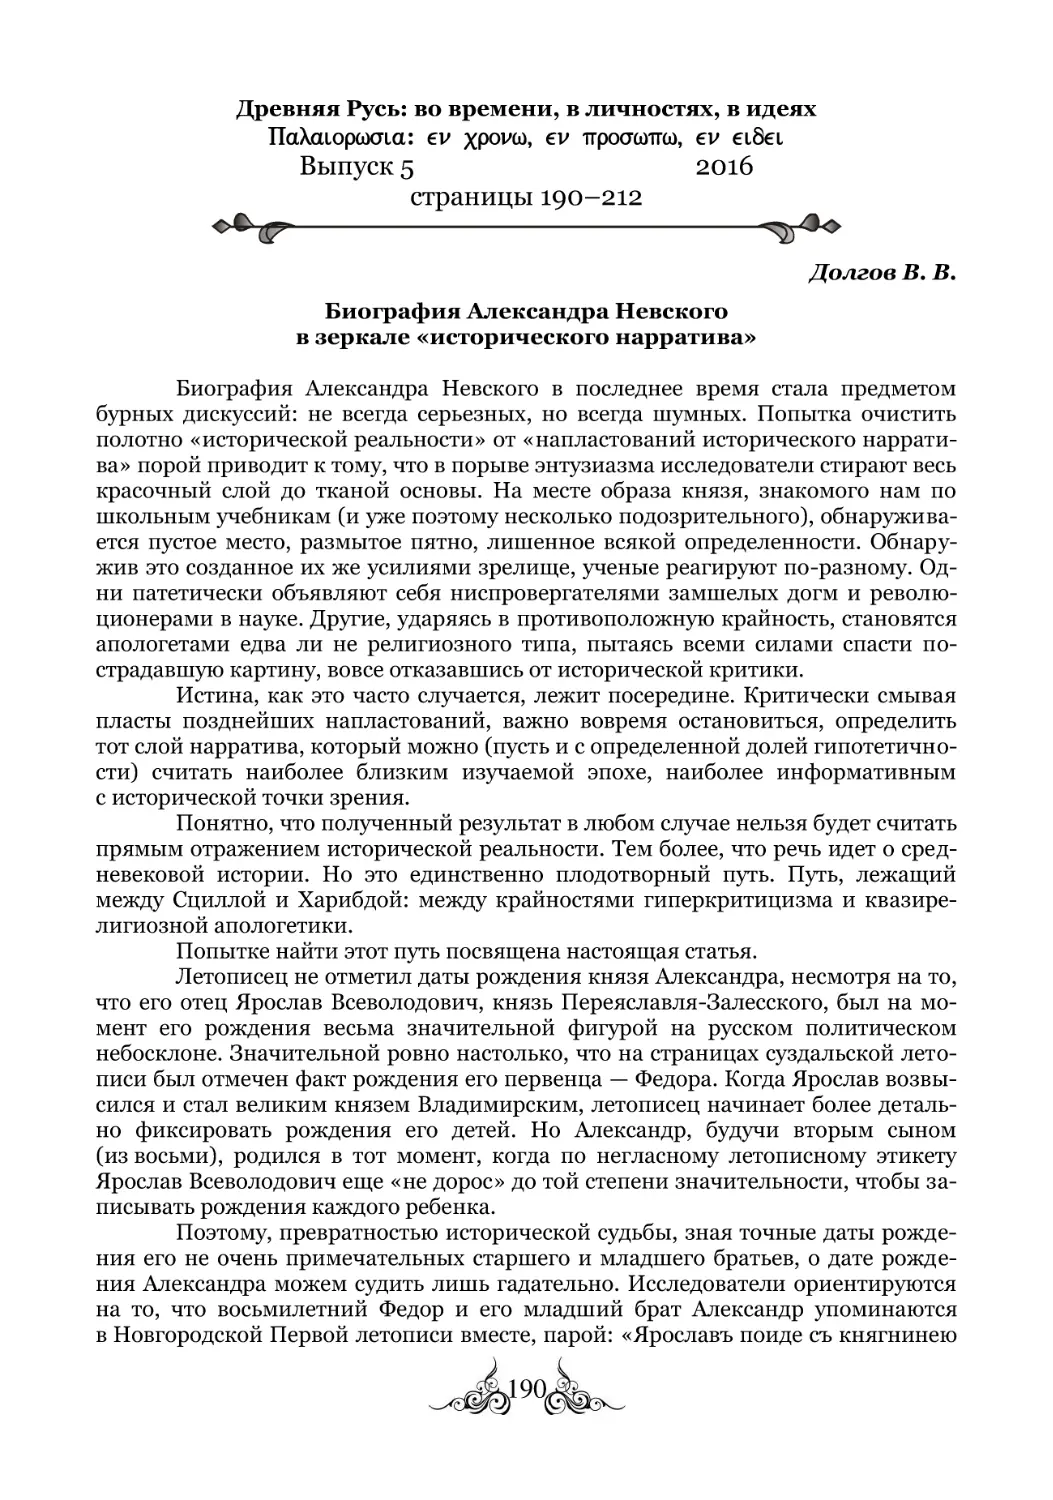 Долгов В. В. Биография Александра Невского в зеркале «исторического нарратива»